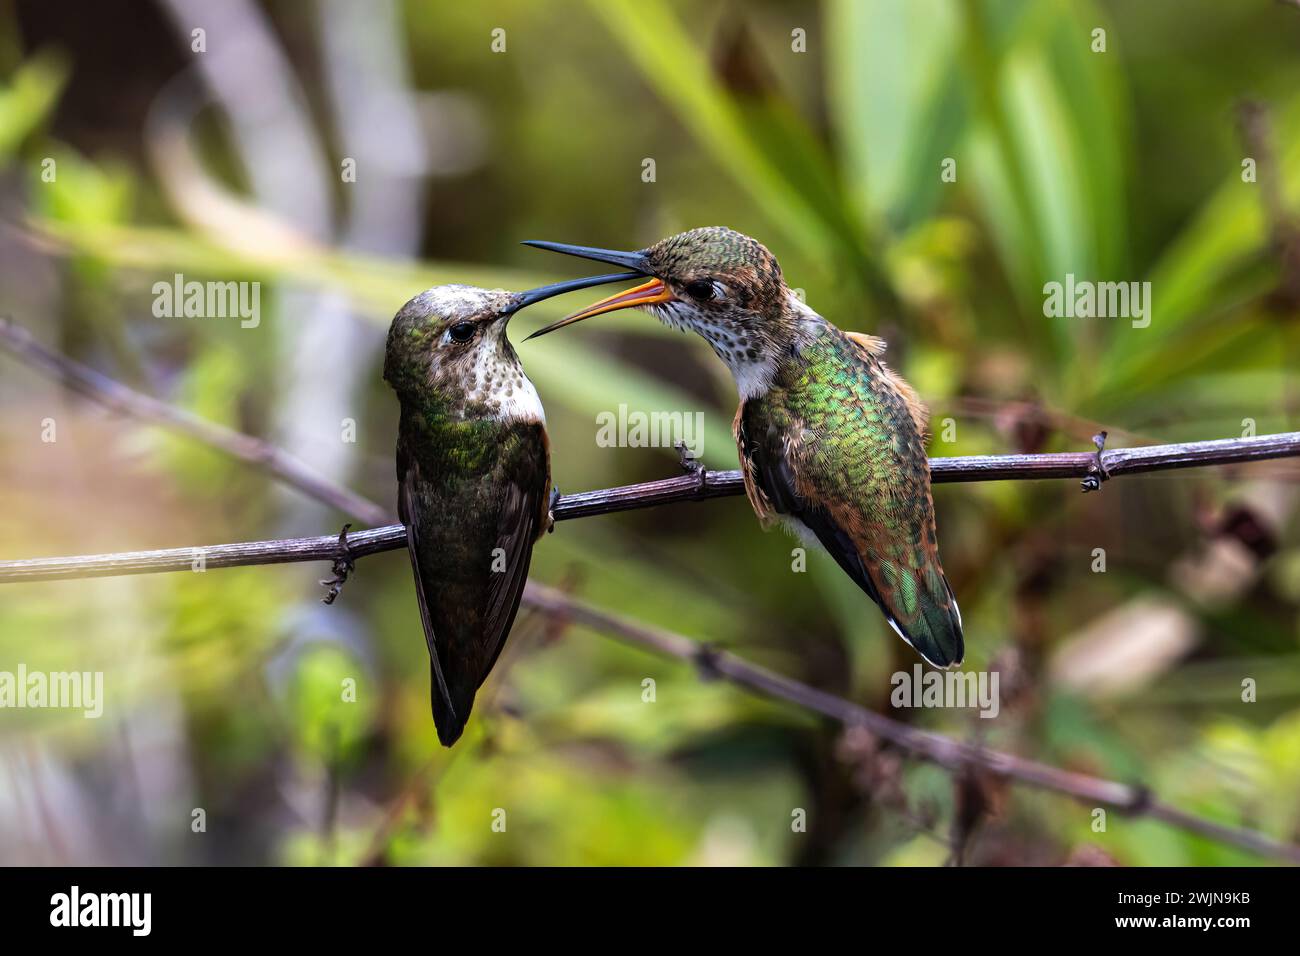 Ein Paar von Annas Kolibris (Calypte anna) auf einem Ast. Mutter füttert ihr Baby. Laguna Niguel, Kalifornien. Stockfoto